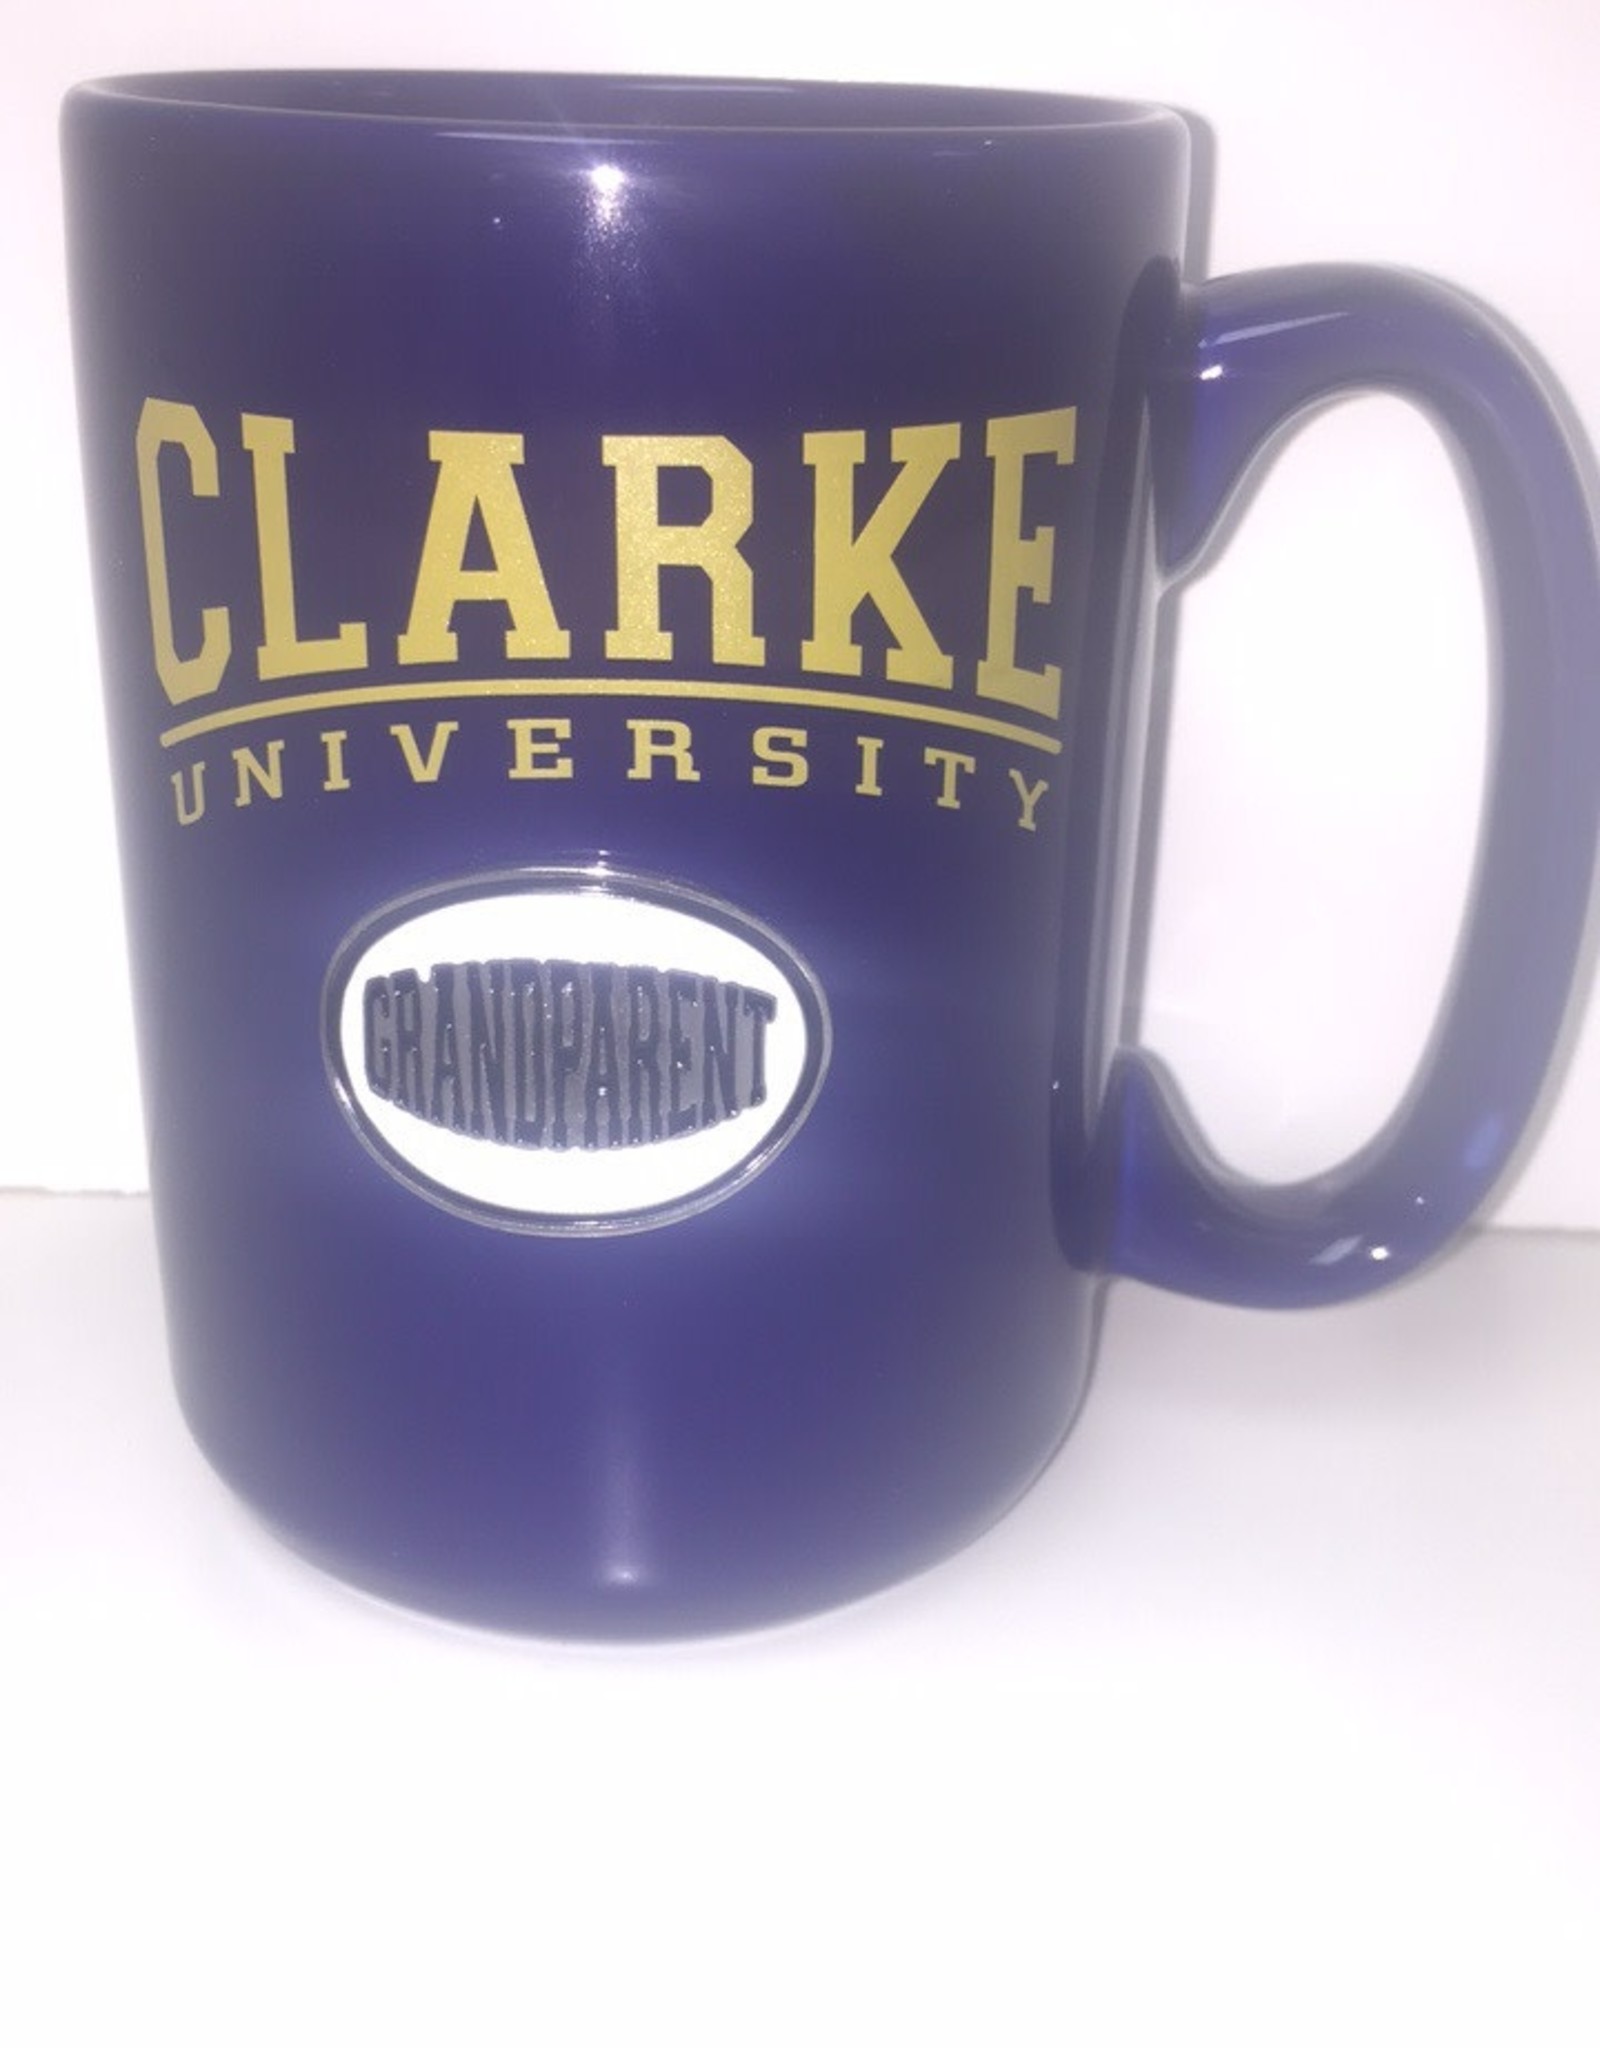 Clarke University Identifying Medallion Mug in Navy